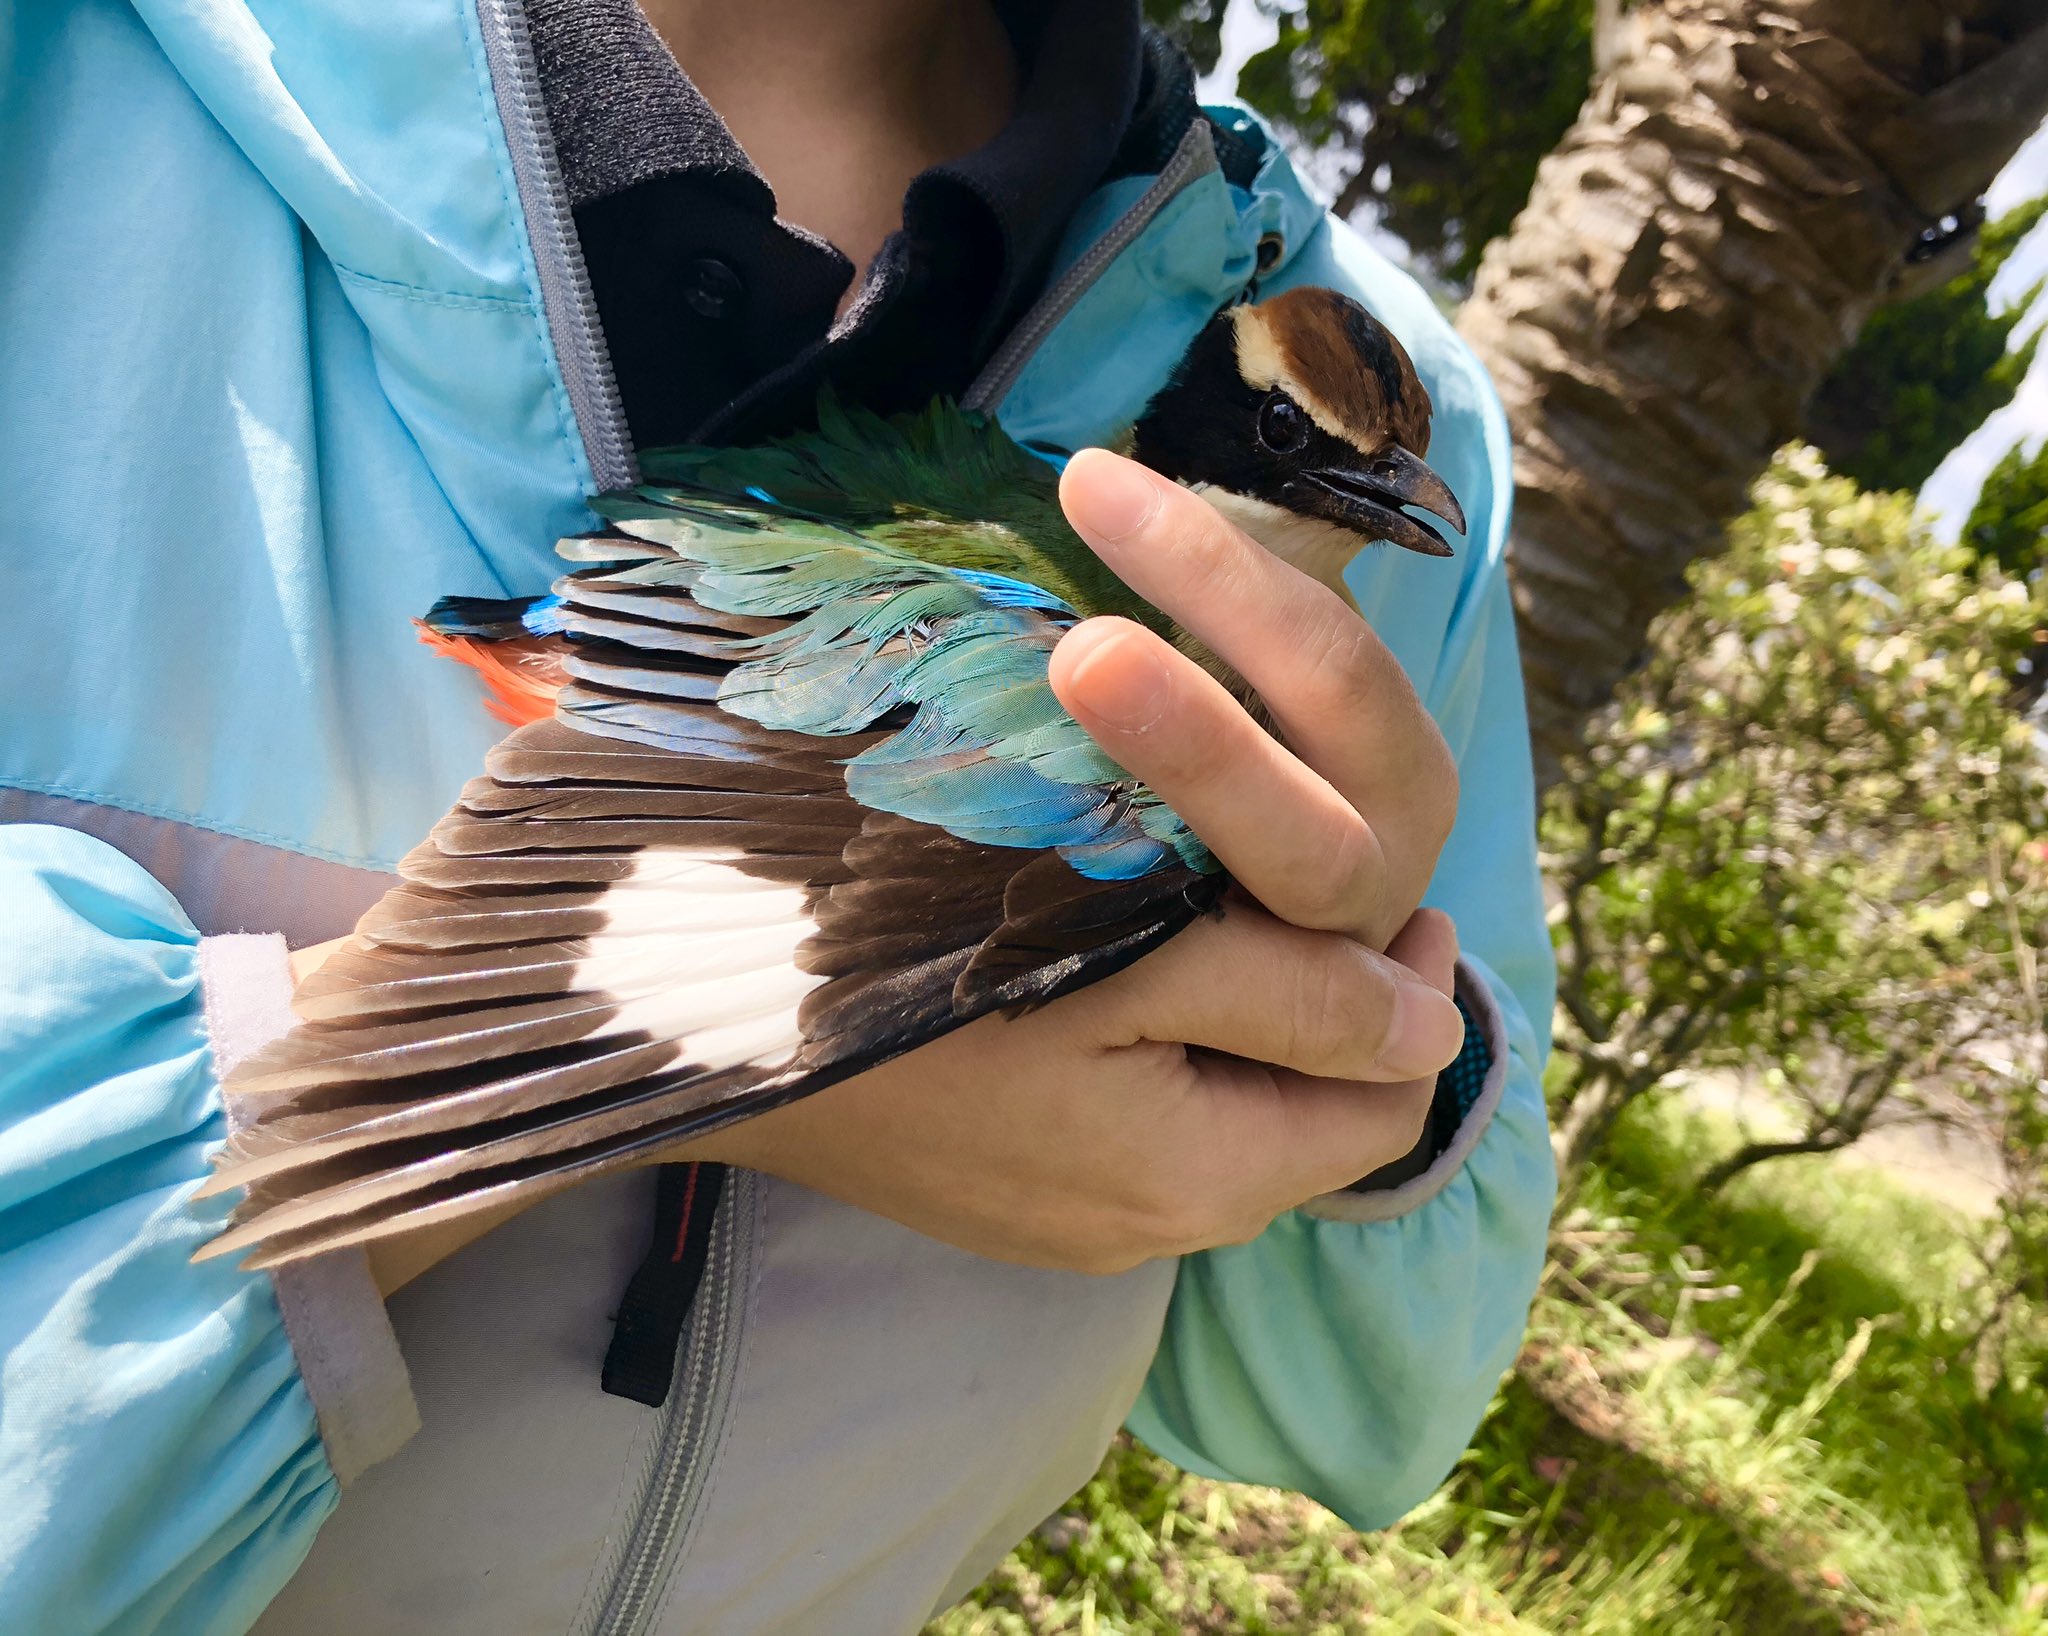 تويتر 宇久島地域おこし協力隊 على تويتر 今朝獣医さんと偶然行き合って 珍しい鳥だそうですよ と写真を撮らせてくれました 宇久の海のようなきれいな羽 なんていう鳥なんでしょう 長崎 佐世保 五島列島 宇久島 地域おこし協力隊 離島 島暮らし 鳥